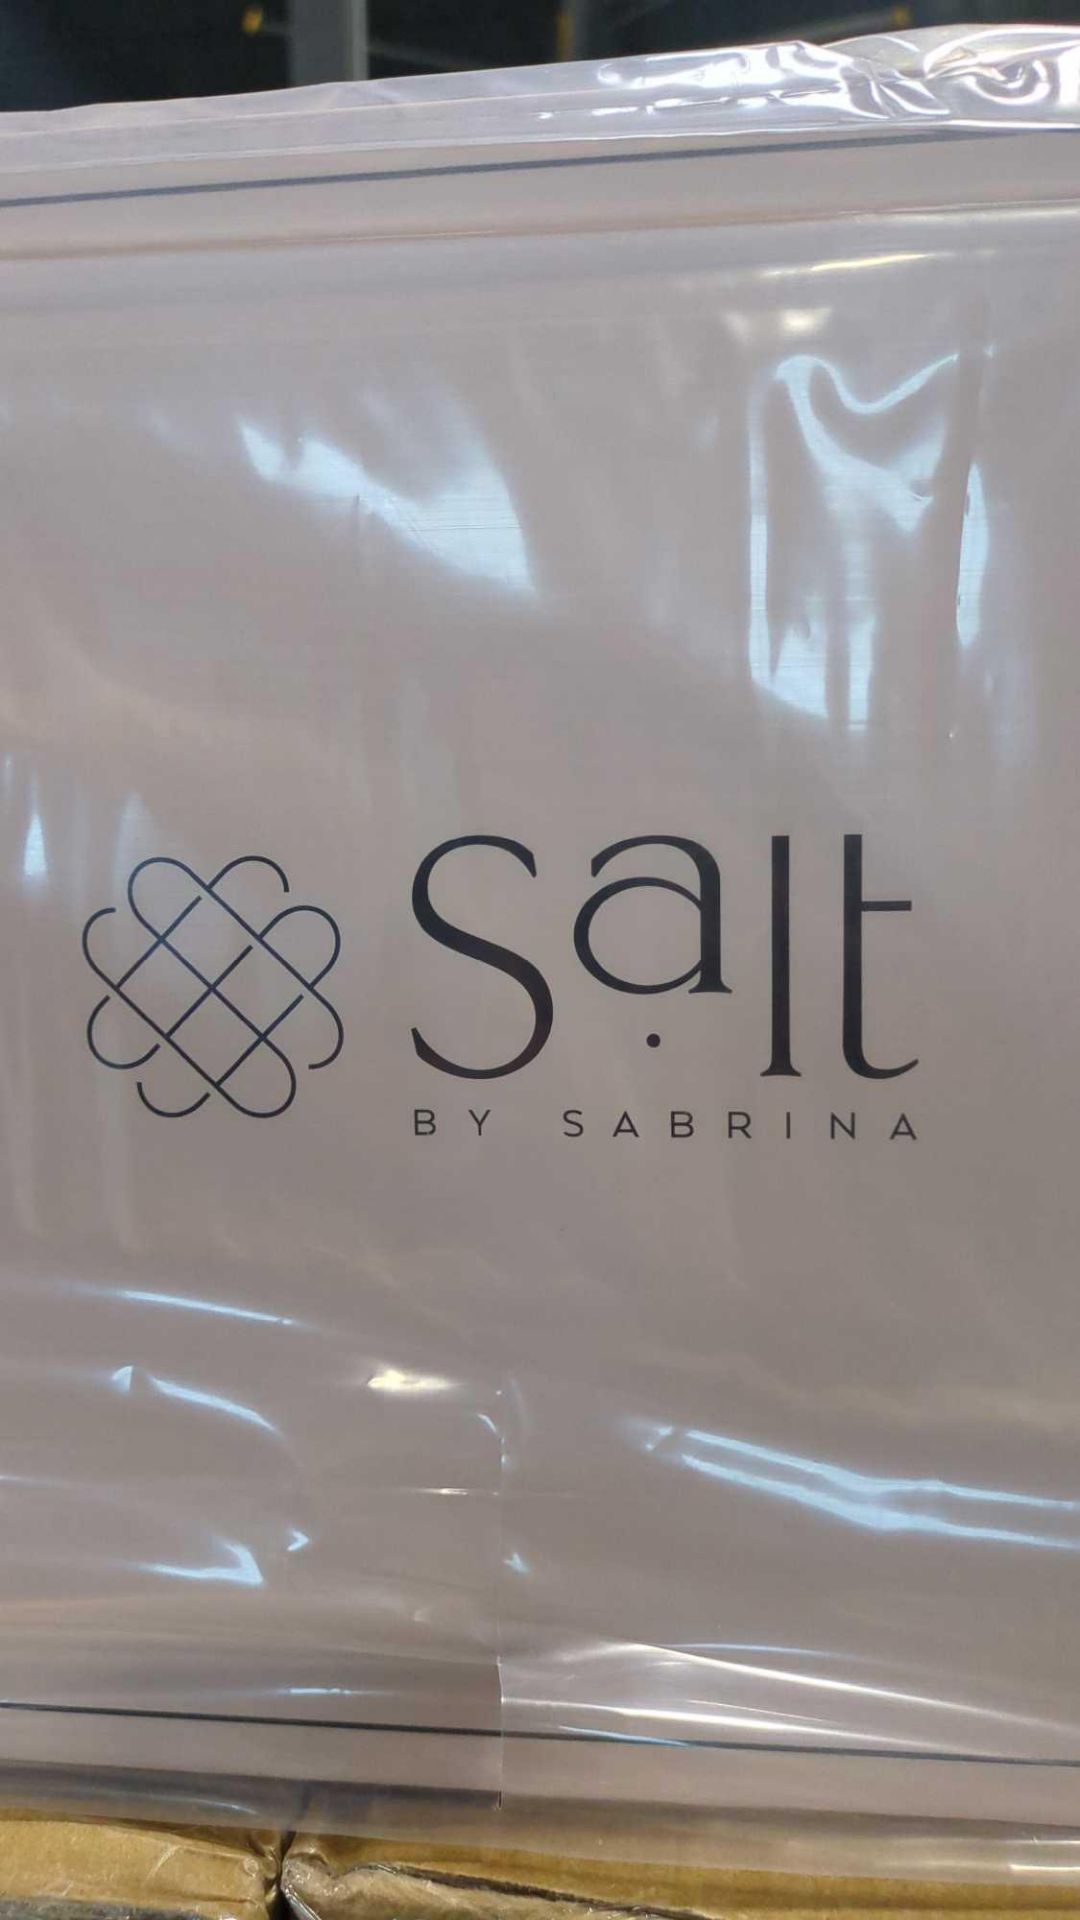 Salt by Sabrina Gold office set, Barcelona basket, Monaco Basket, Resin Storage box, Pen Holder, Spi - Image 2 of 13